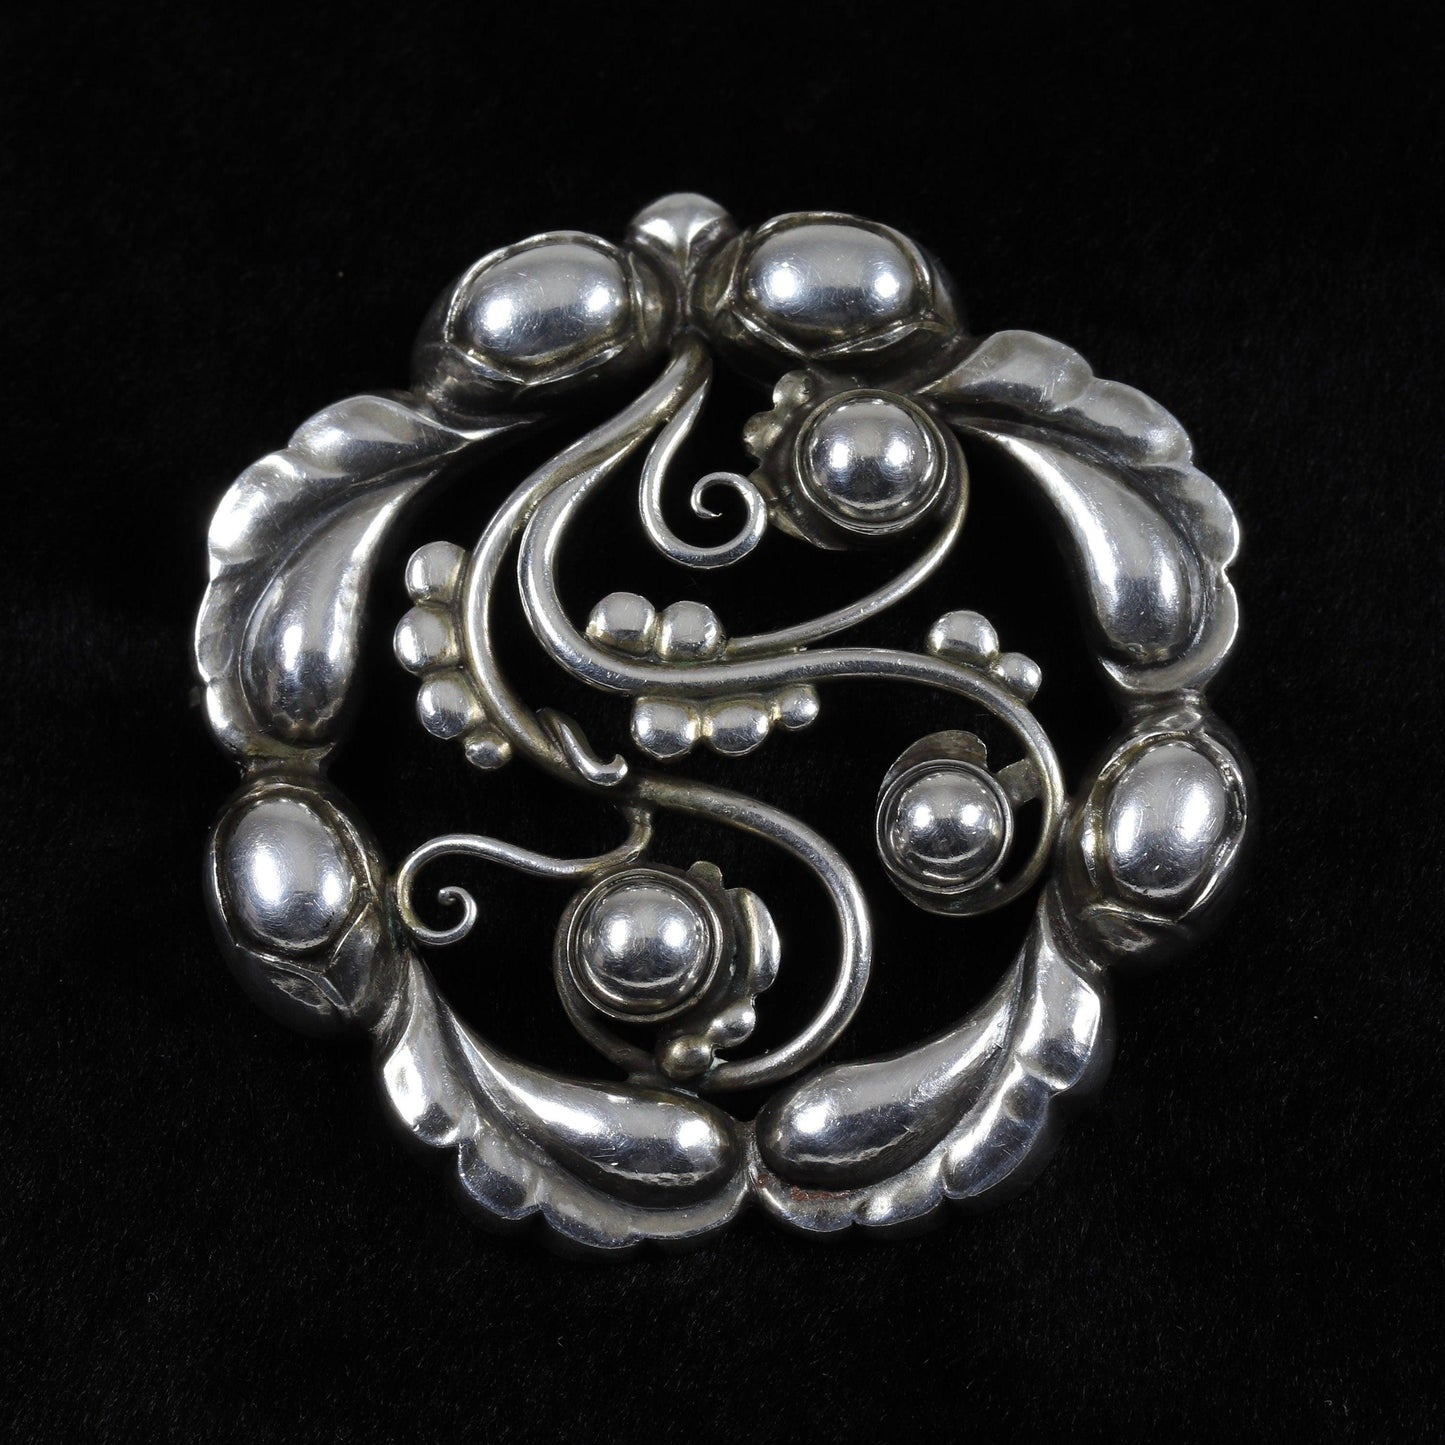 Vintage Georg Jensen Jewelry | Moonlight Blossom Art Nouveau Brooch 159 - Carmel Fine Silver Jewelry